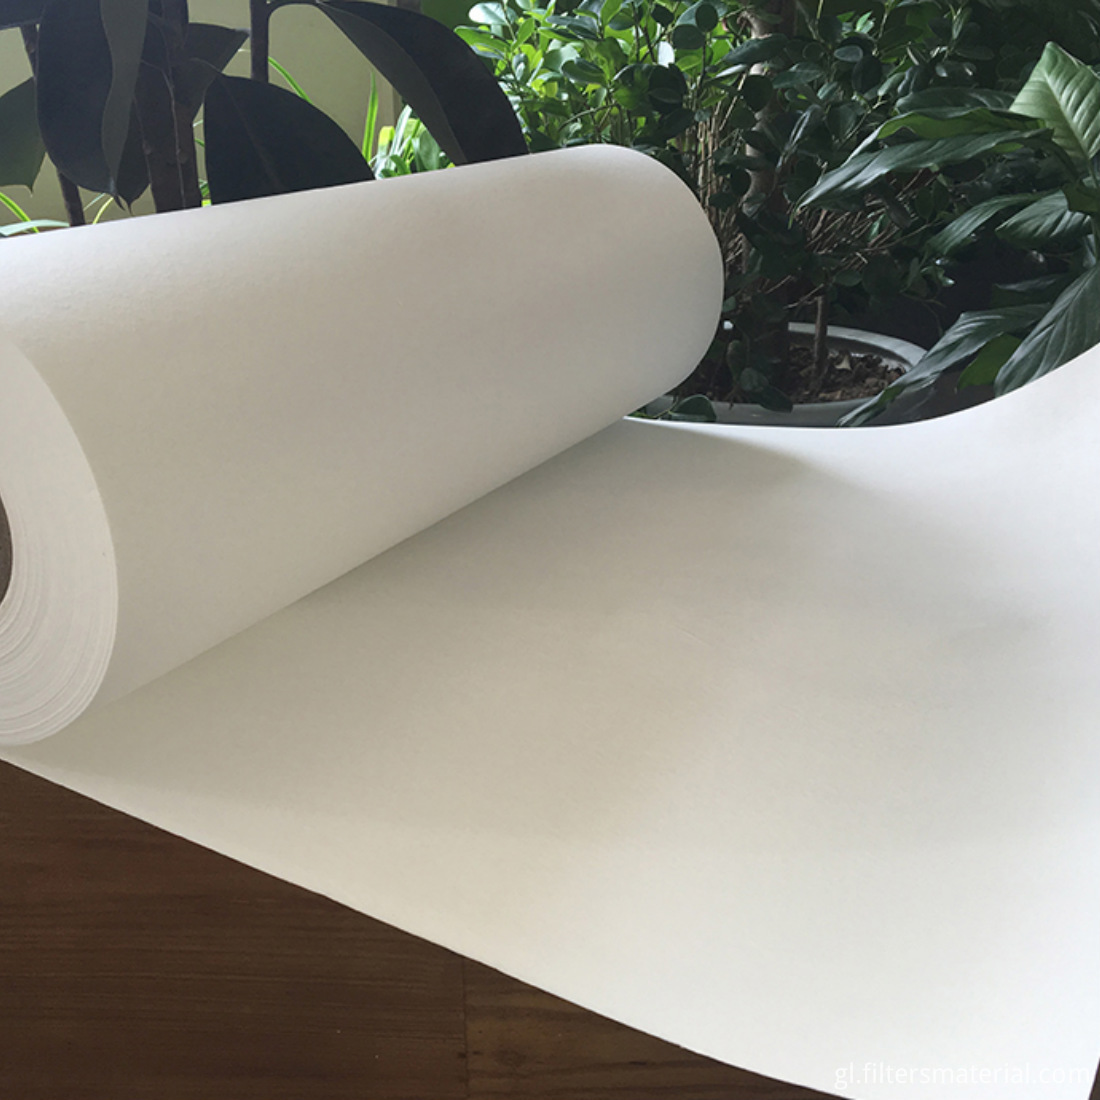 fiberglass liquid filter paper